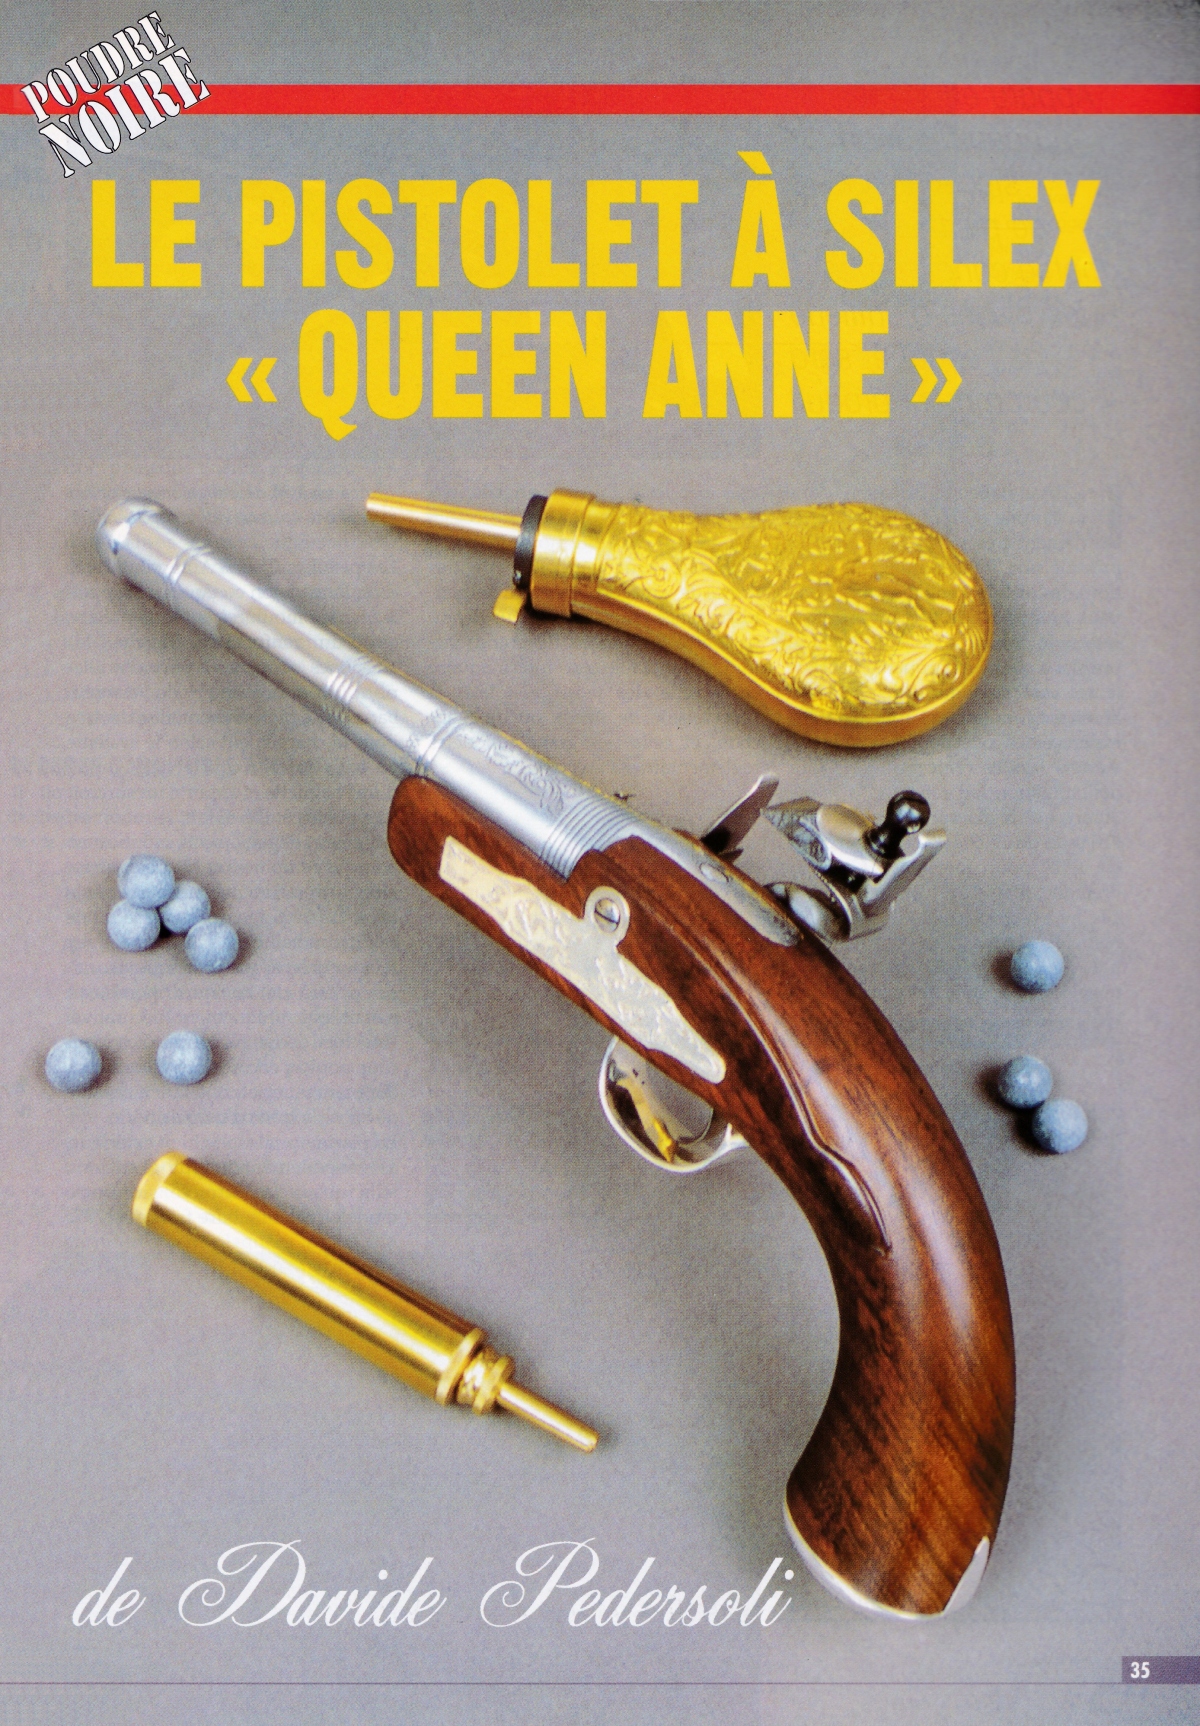 Cette réplique de pistolet à silex Queen Anne constitue un modèle simple, bien conçu, facile à utiliser et à nettoyer.